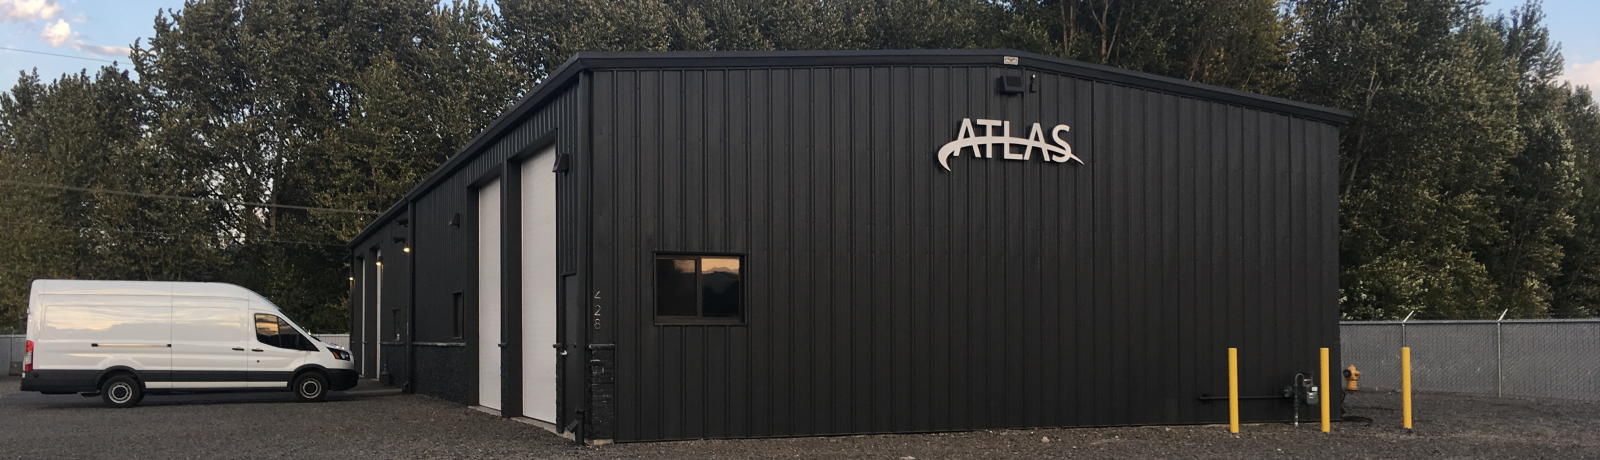 Atlas Plumbing Shop Expansion